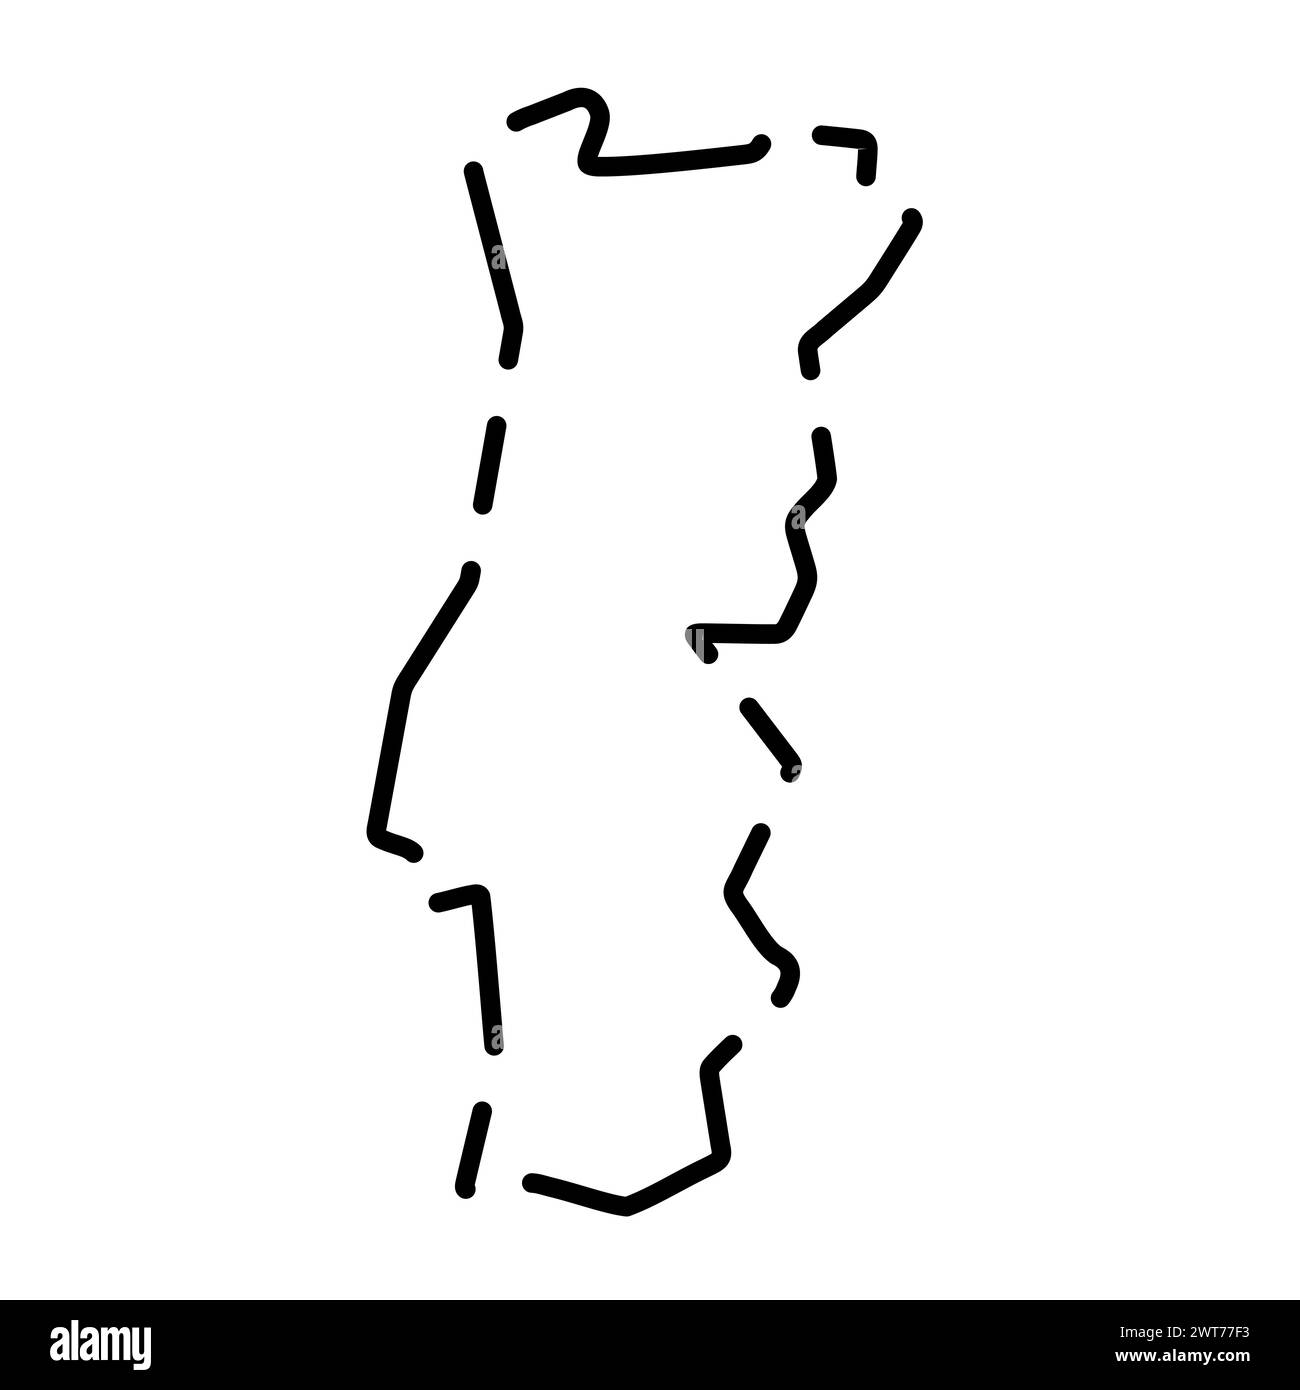 Mappa semplificata per il Portogallo. Contorno nero interrotto su sfondo bianco. Semplice icona vettoriale Illustrazione Vettoriale